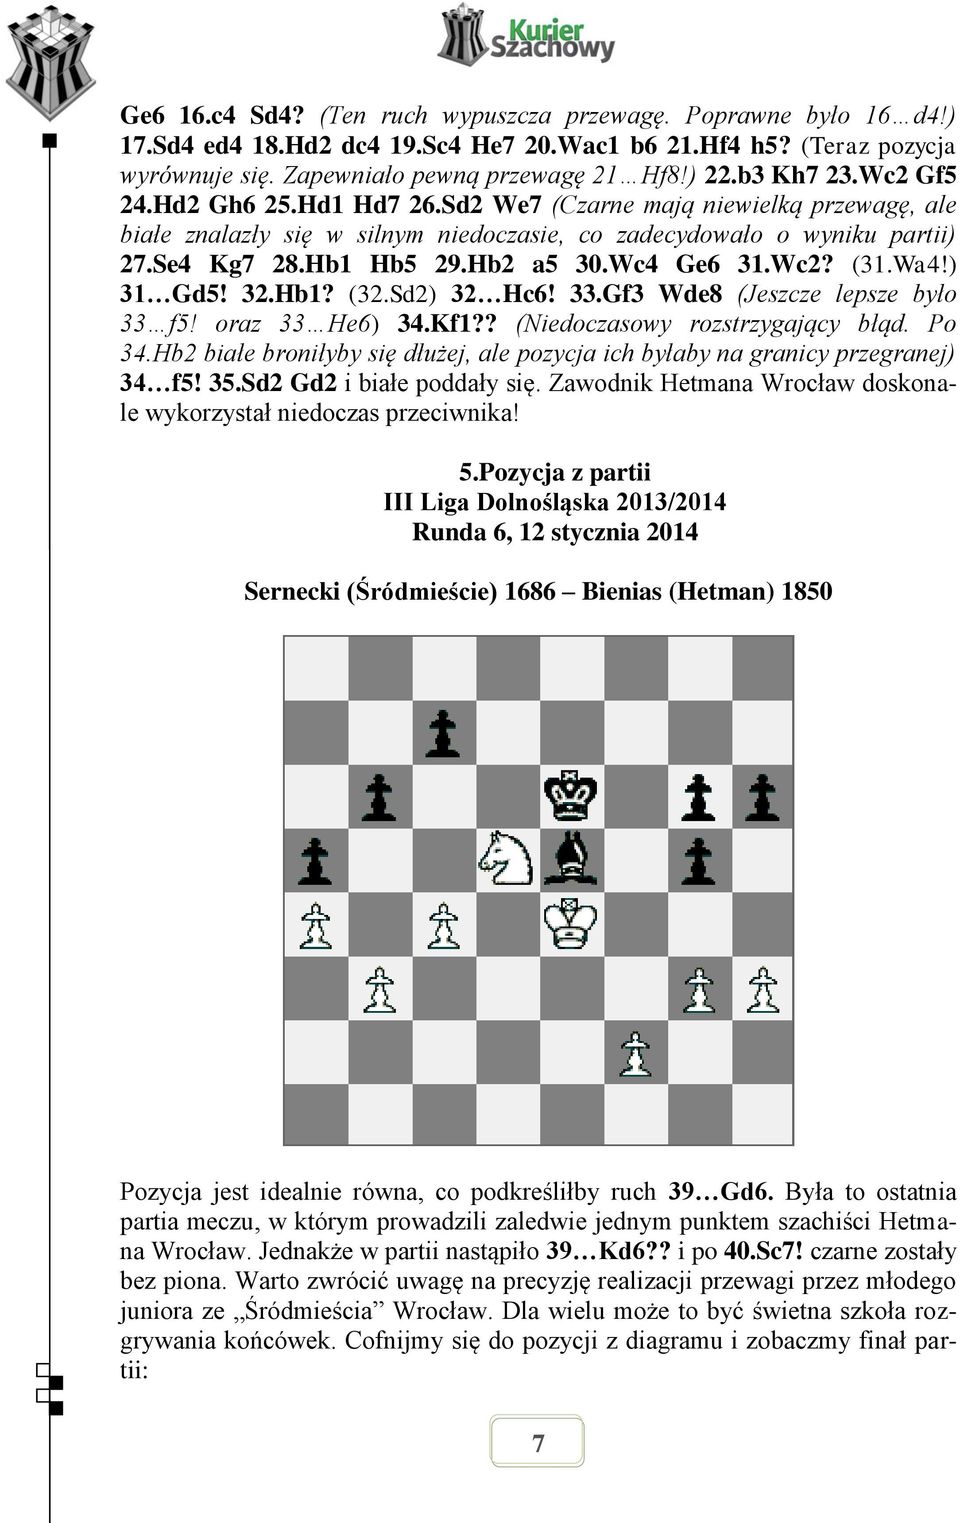 Wc2? (31.Wa4!) 31 Gd5! 32.Hb1? (32.Sd2) 32 Hc6! 33.Gf3 Wde8 (Jeszcze lepsze było 33 f5! oraz 33 He6) 34.Kf1?? (Niedoczasowy rozstrzygający błąd. Po 34.